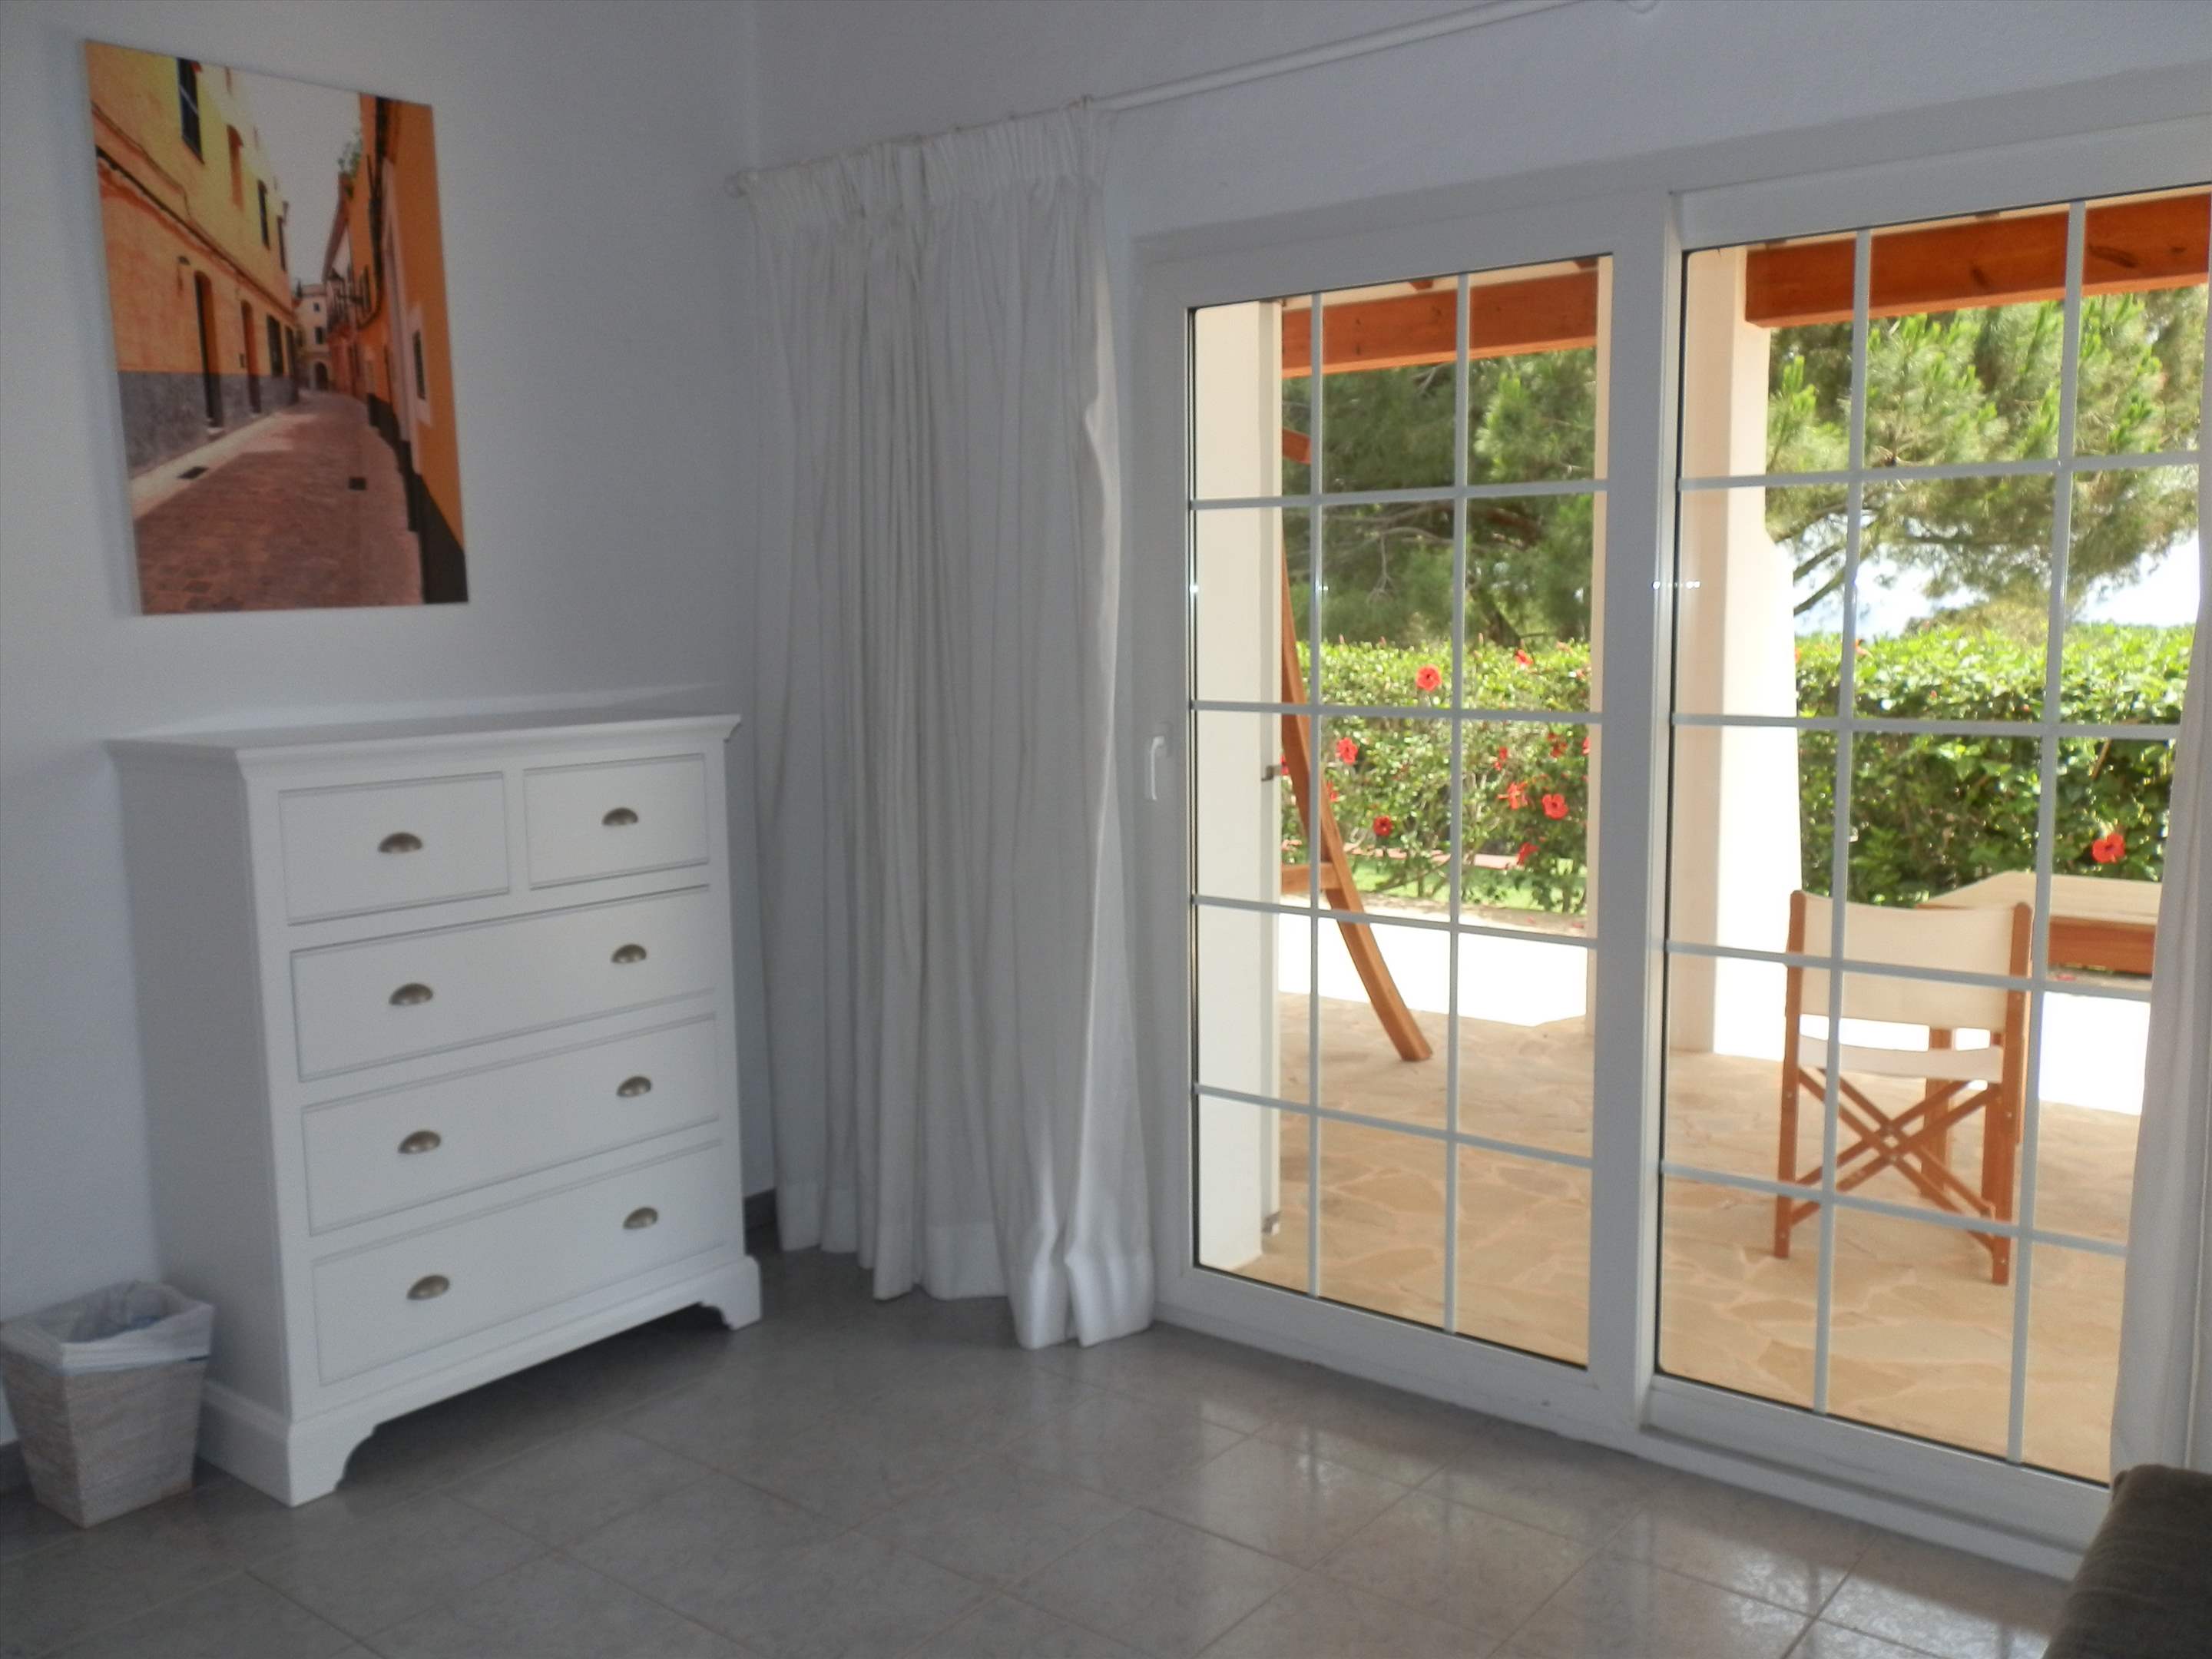 Casa del Mar de Ana-Cristo, 5 Bedroom rate, 5 bedroom villa in Mahon, San Luis & South East, Menorca Photo #33